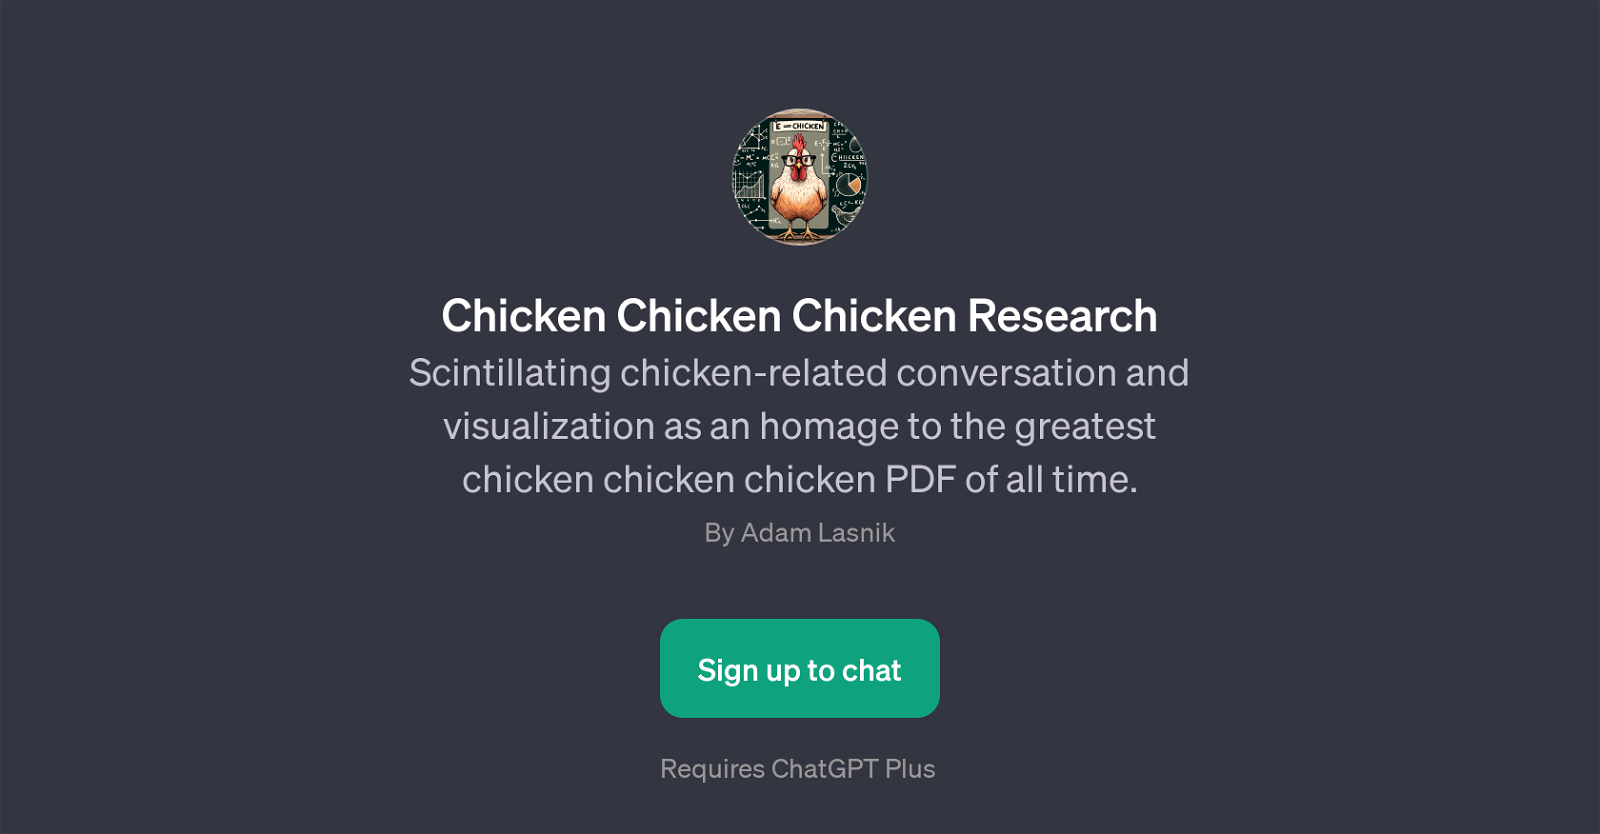 Chicken Chicken Chicken Research website